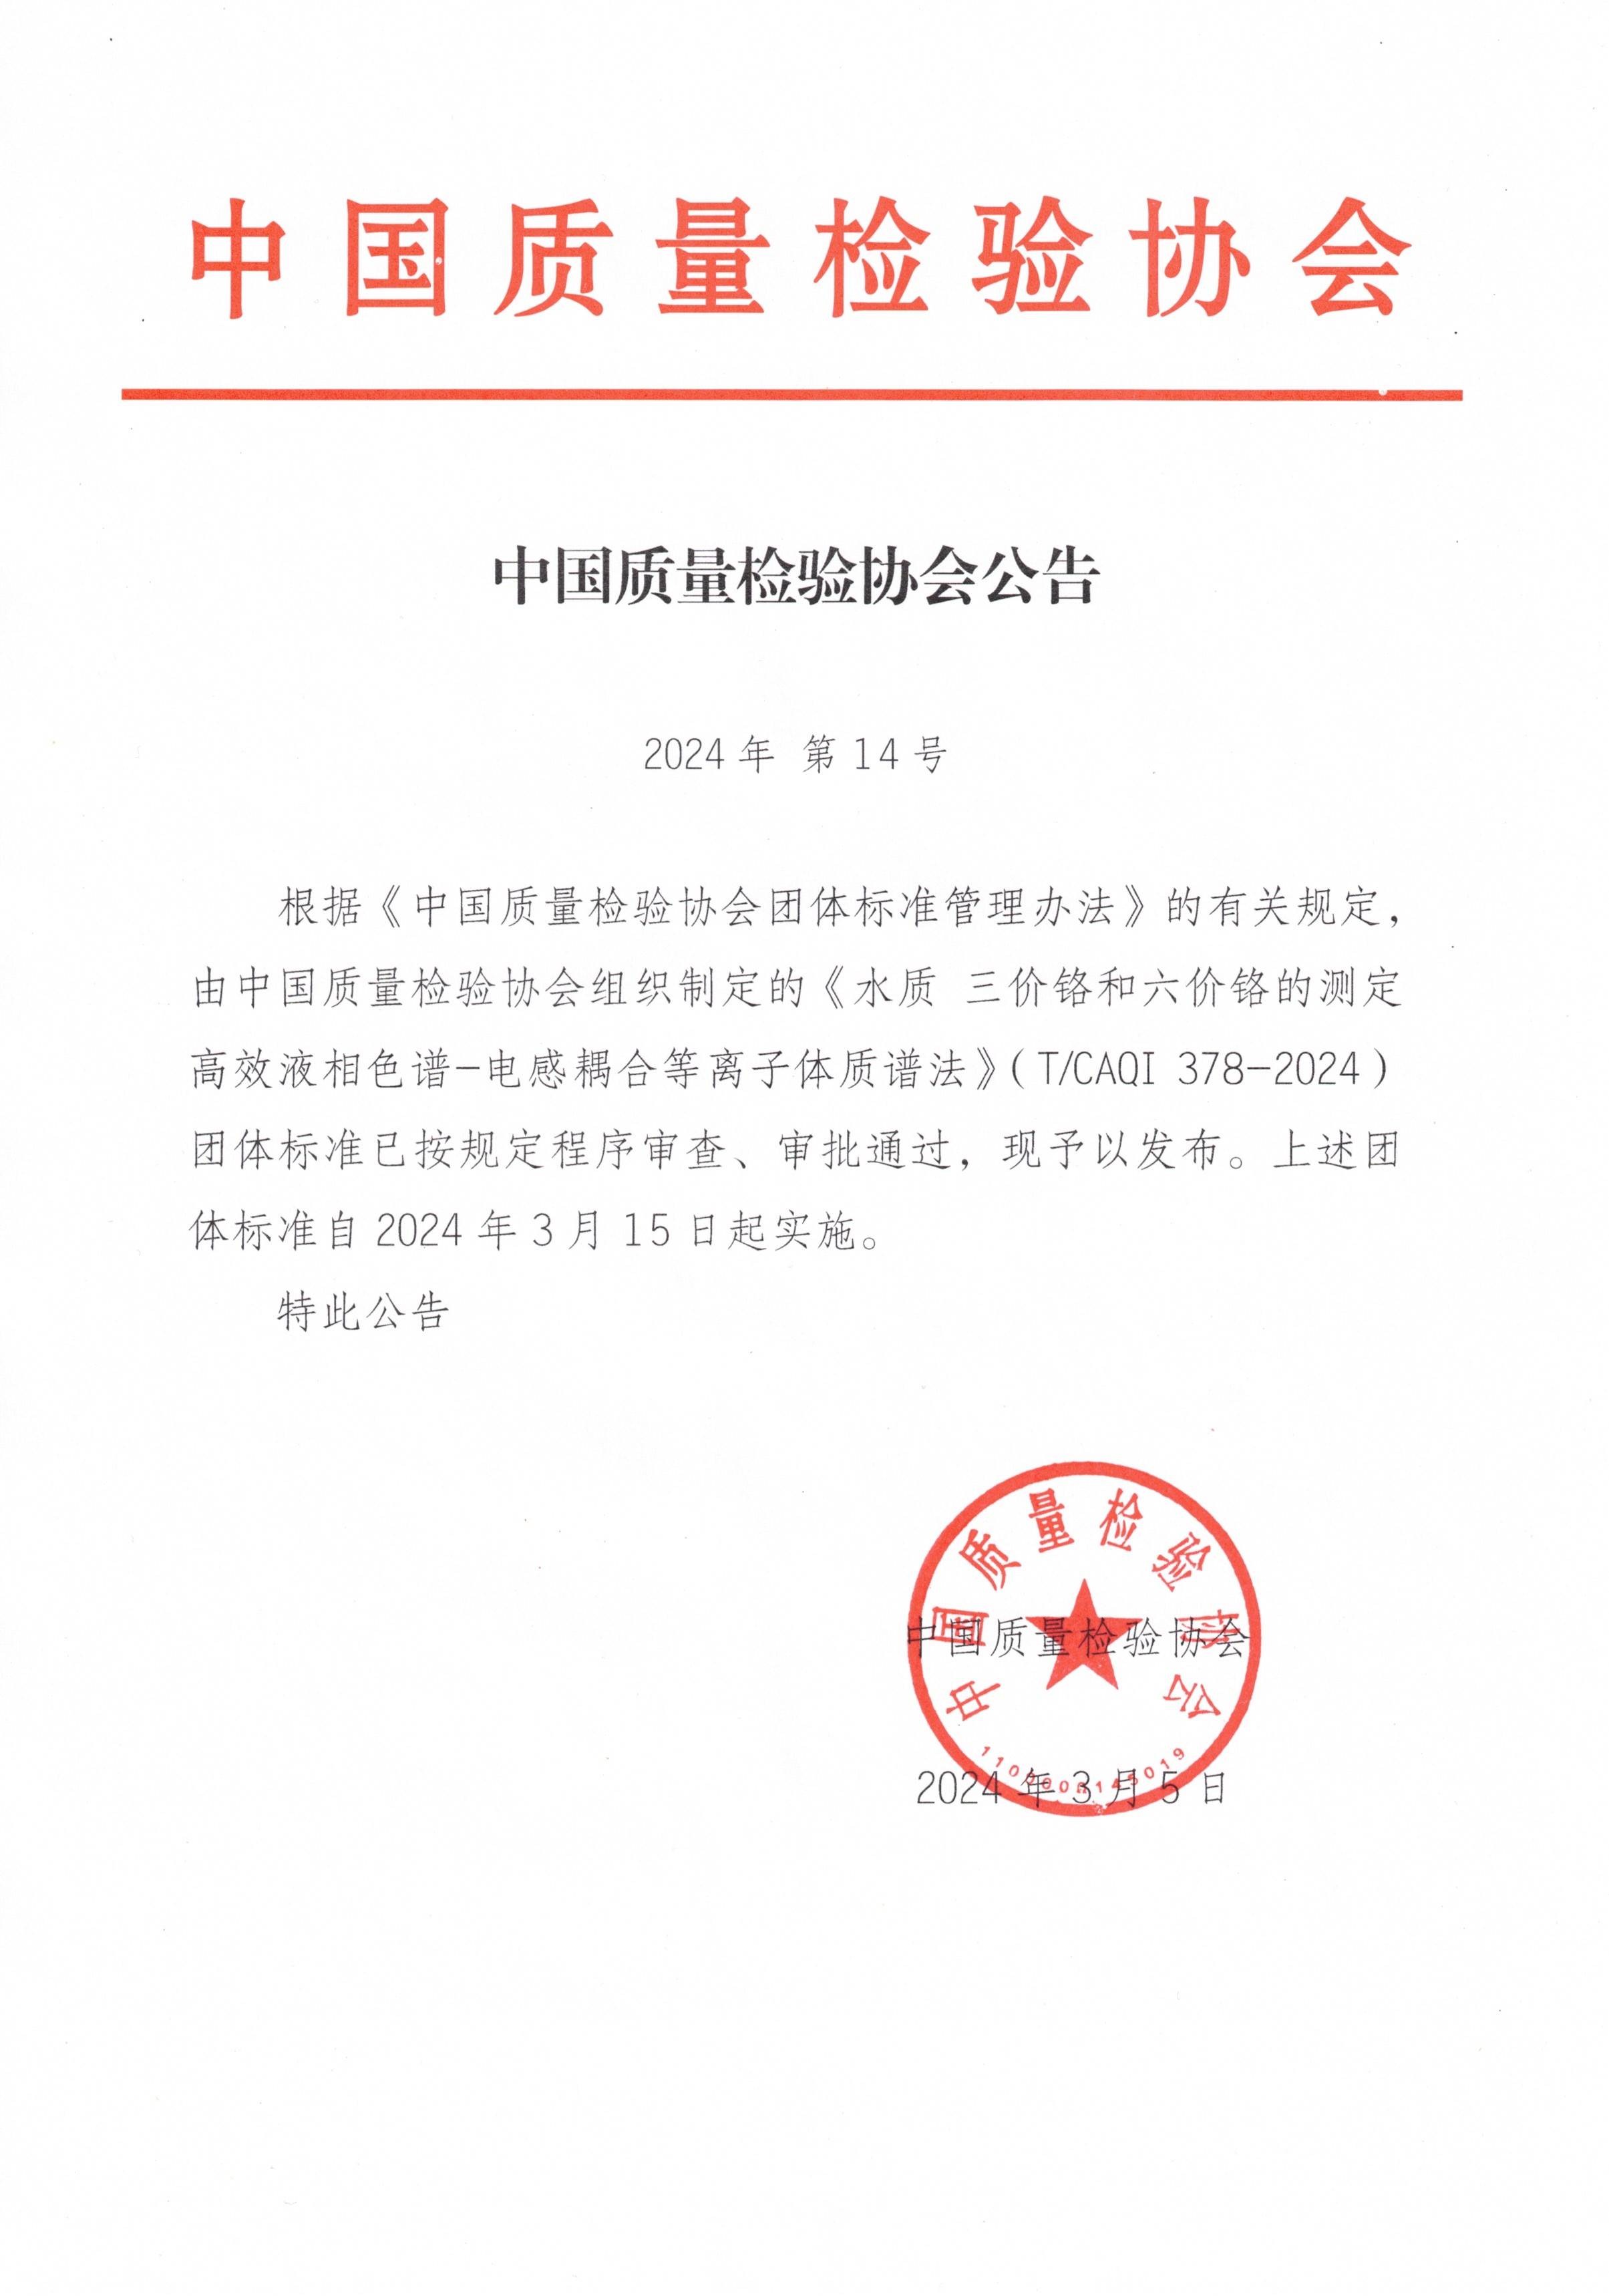 中国质量检验协会公告 2024年 第14号.jpg